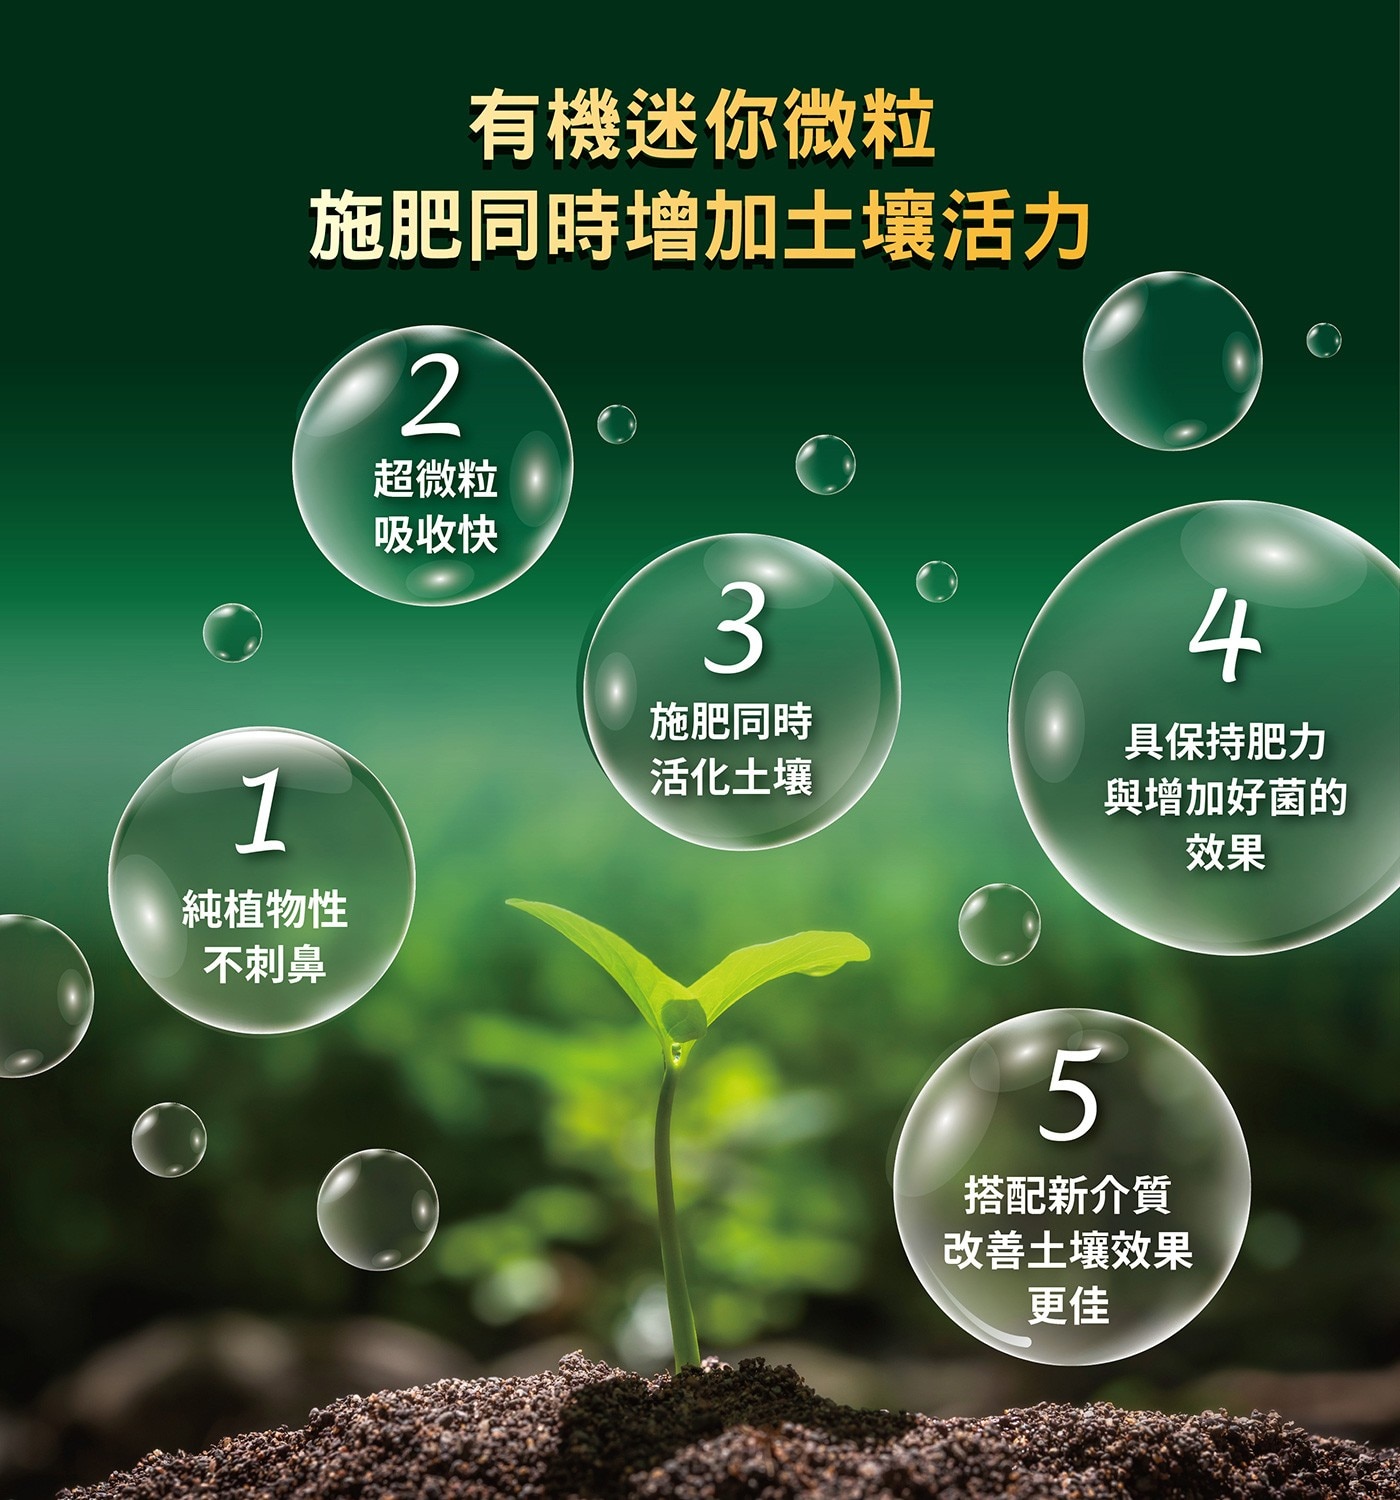 花田綠地 歐盟有機質通用肥料 600公克 X 4包有機迷你微粒施肥同時增加土壤活力